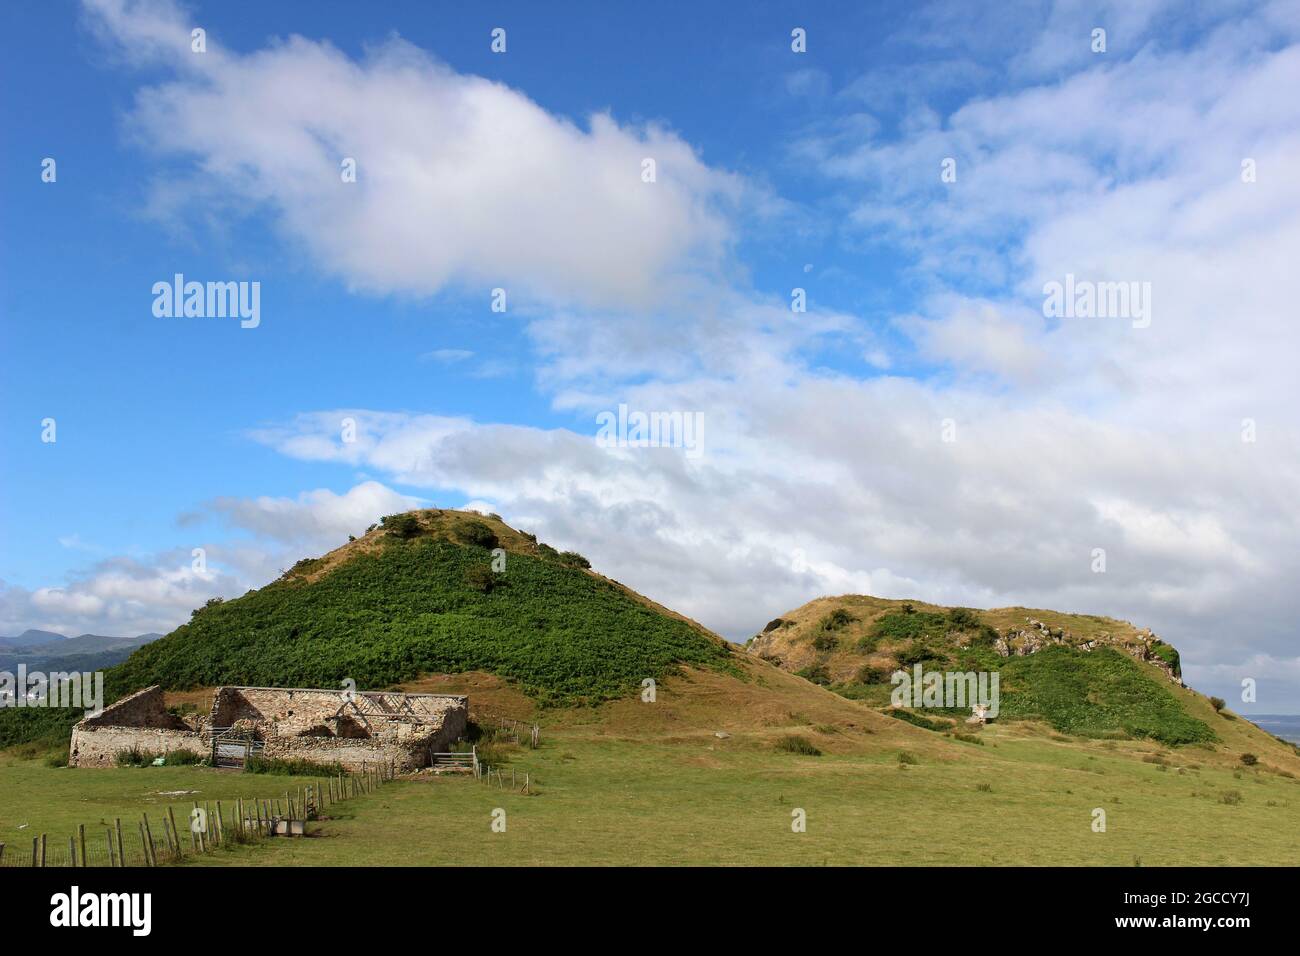 El Vardre dos tapones volcánicos - el sitio para el castillo medieval de Deganwy una antigua fortaleza de Gwynedd que se encuentra en la desembocadura del río Conwy, Gales Foto de stock